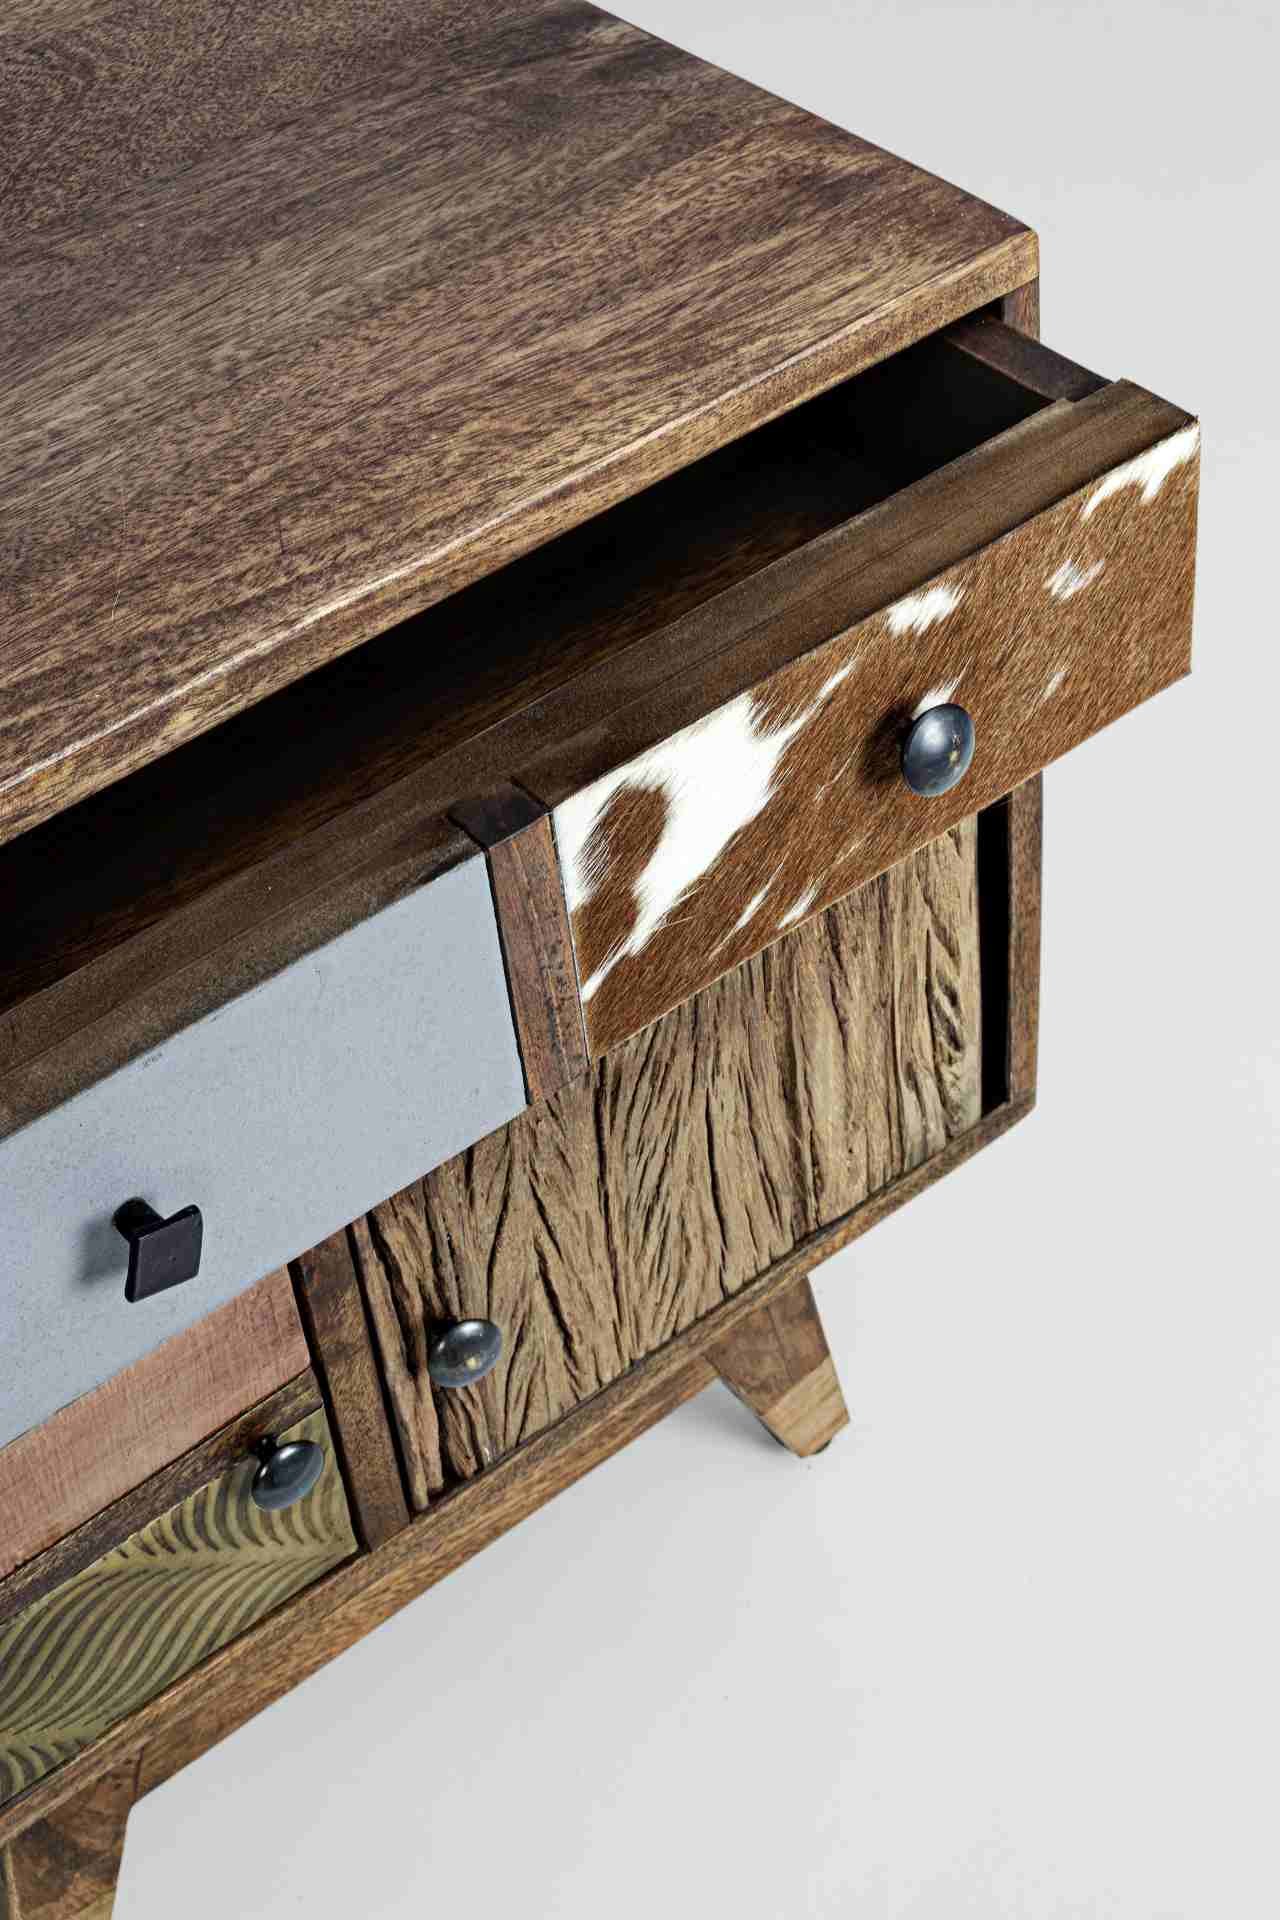 Der Nachttisch Dhaval überzeugt mit seinem klassischen Design. Gefertigt wurde er aus Mangoholz, welches einen natürlichen Farbton besitzt. Das Gestell ist auch aus Mangoholz. Der Nachttisch verfügt über zwei Schubladen und zwei Türen. Die Breite beträgt 